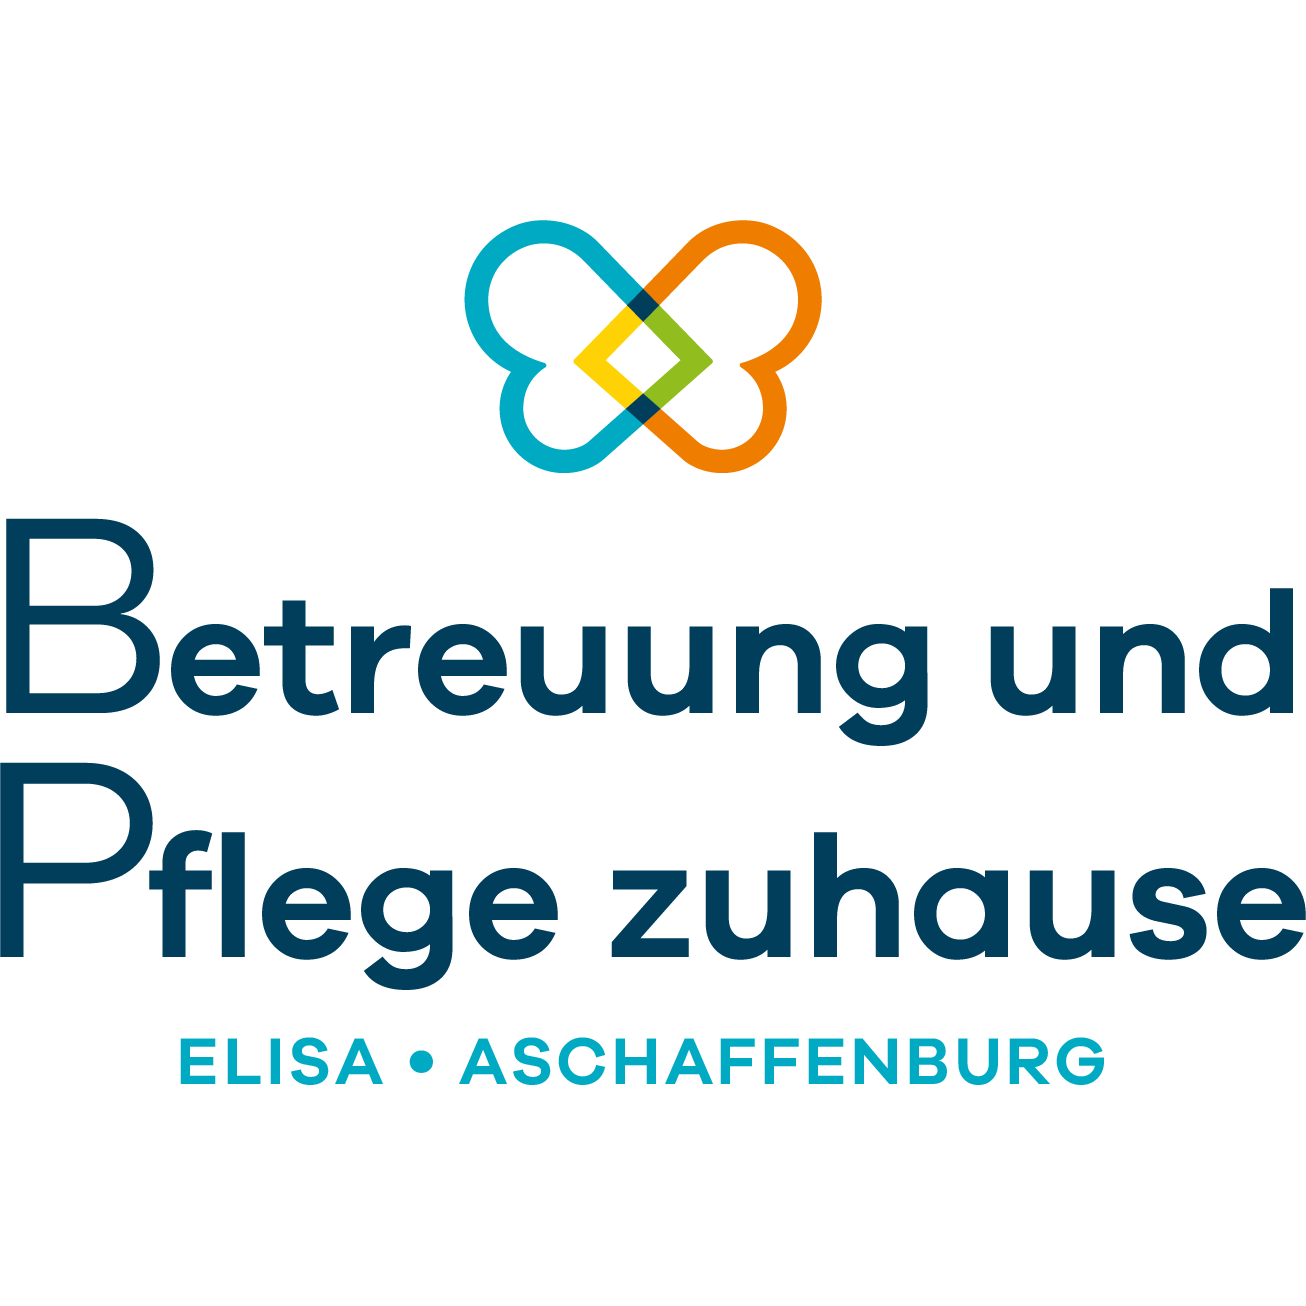 Betreuung und Pflege zuhause Elisa Aschaffenburg in Aschaffenburg - Logo